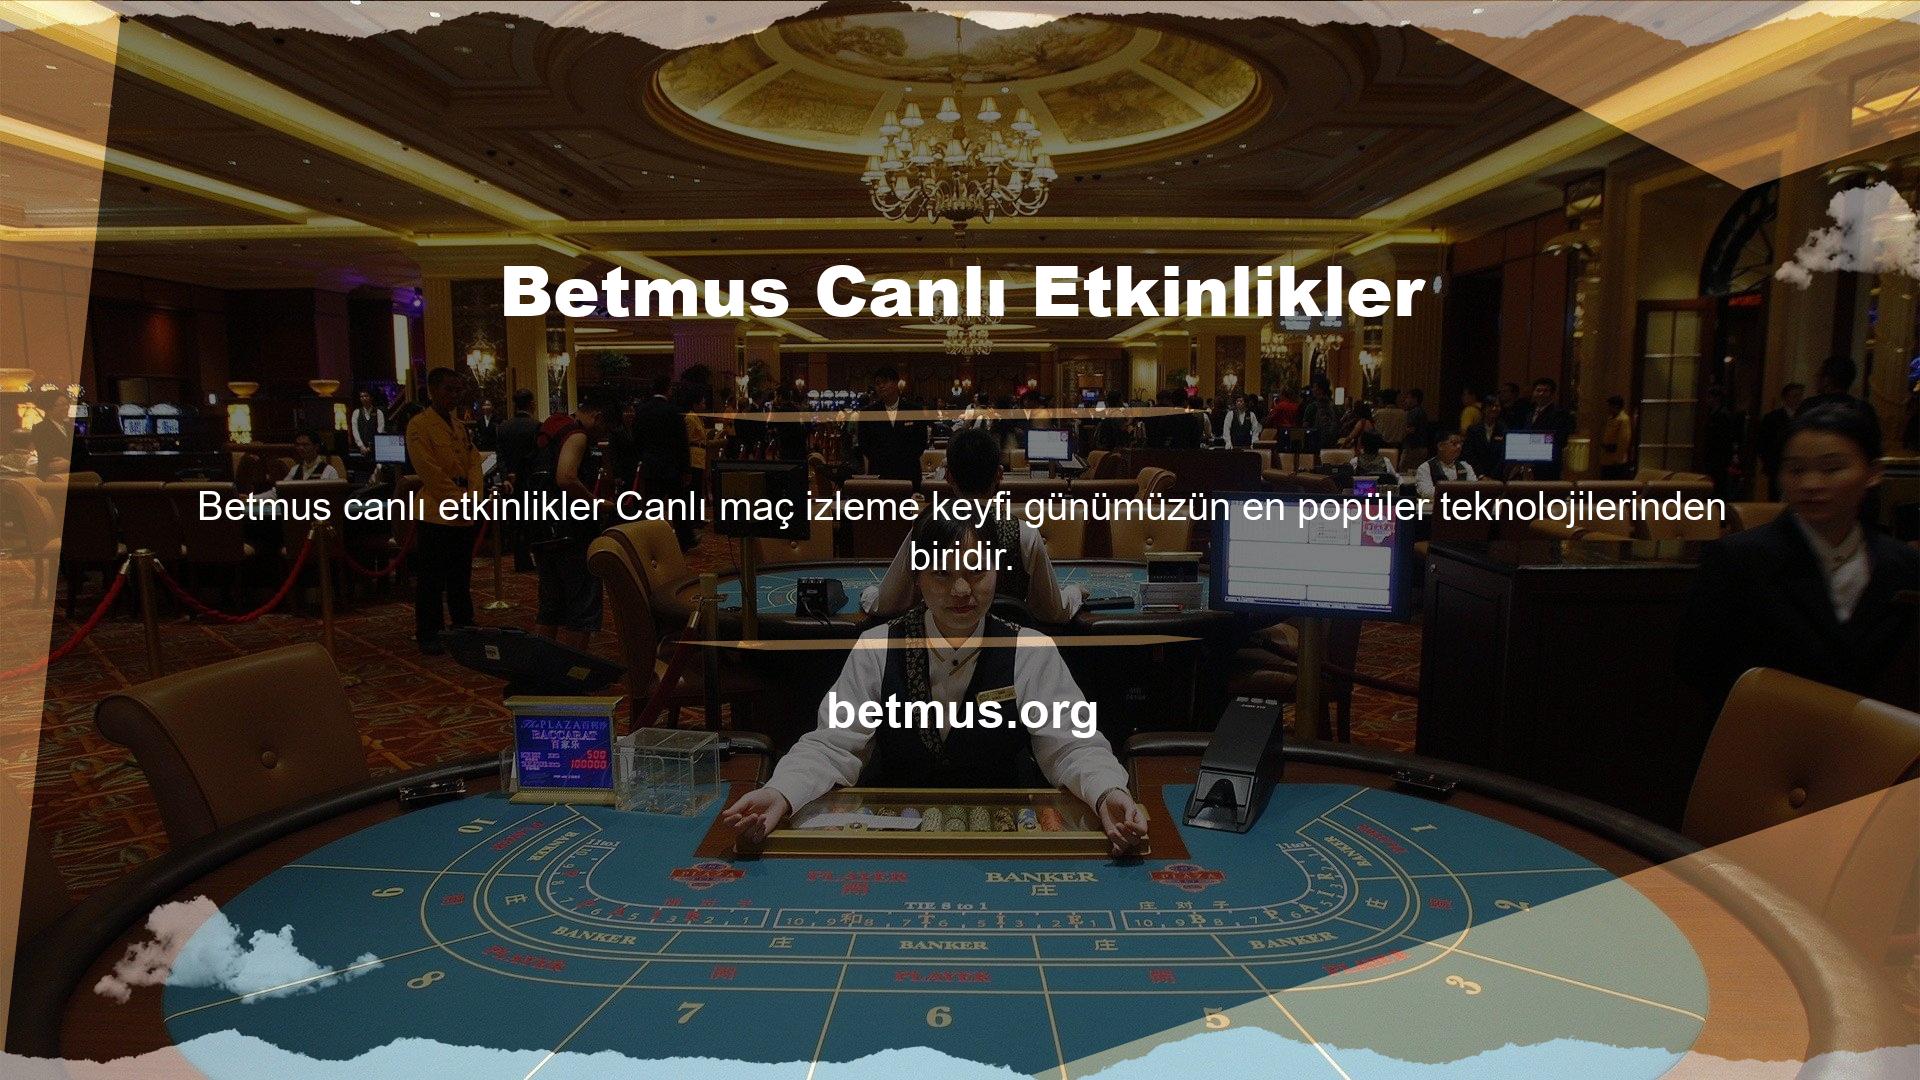 Betmus, özellikle kullanıcı memnuniyeti açısından dünyada büyük bir yere sahiptir ve izlenecek çok çeşitli oyunlar sunmaktadır